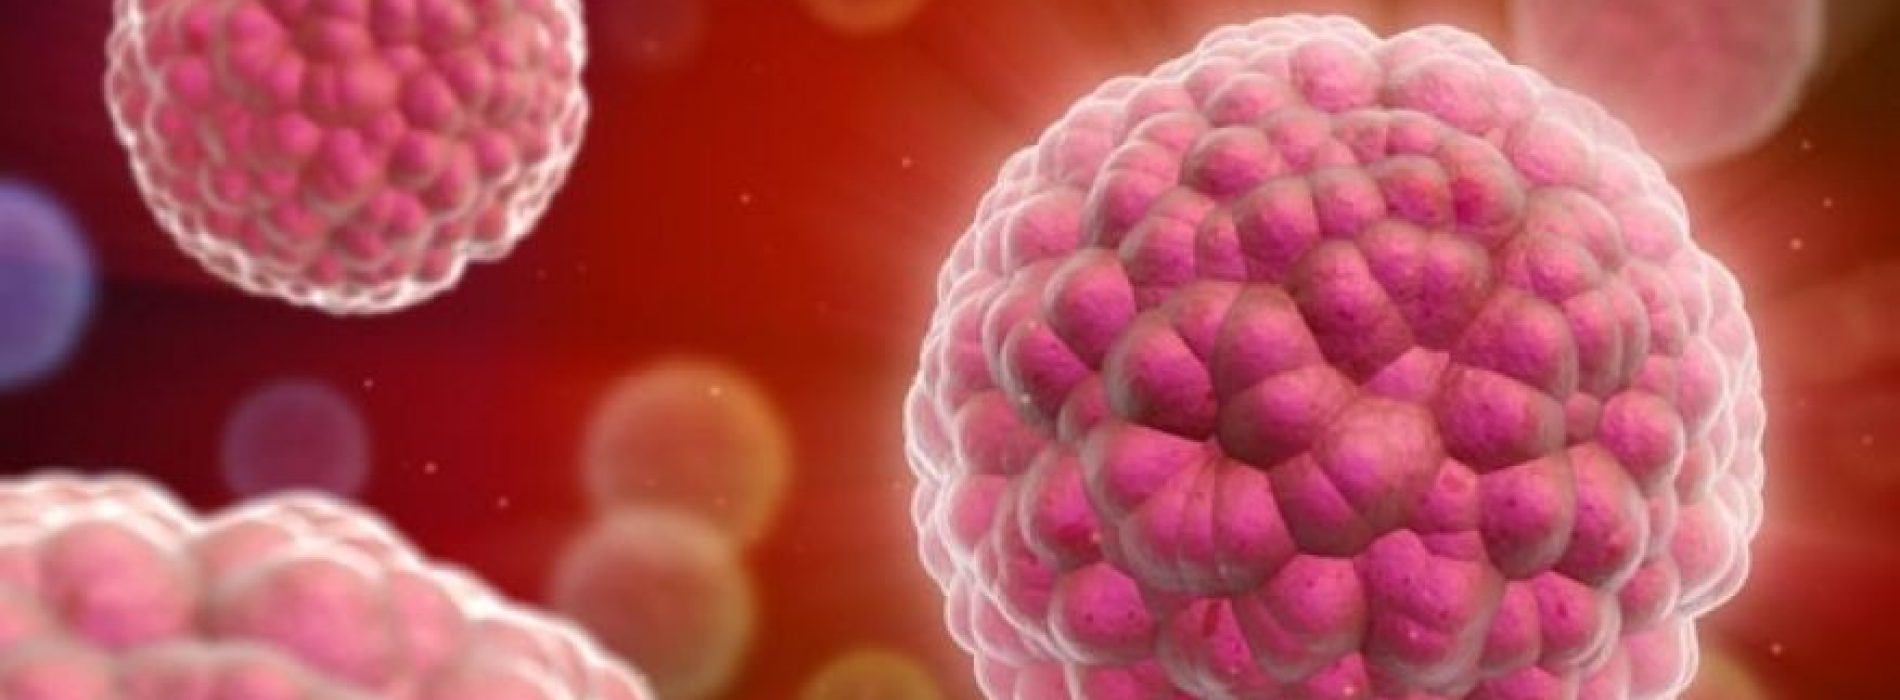 Gerichte echografie vernietigt kankercellen: onderzoek